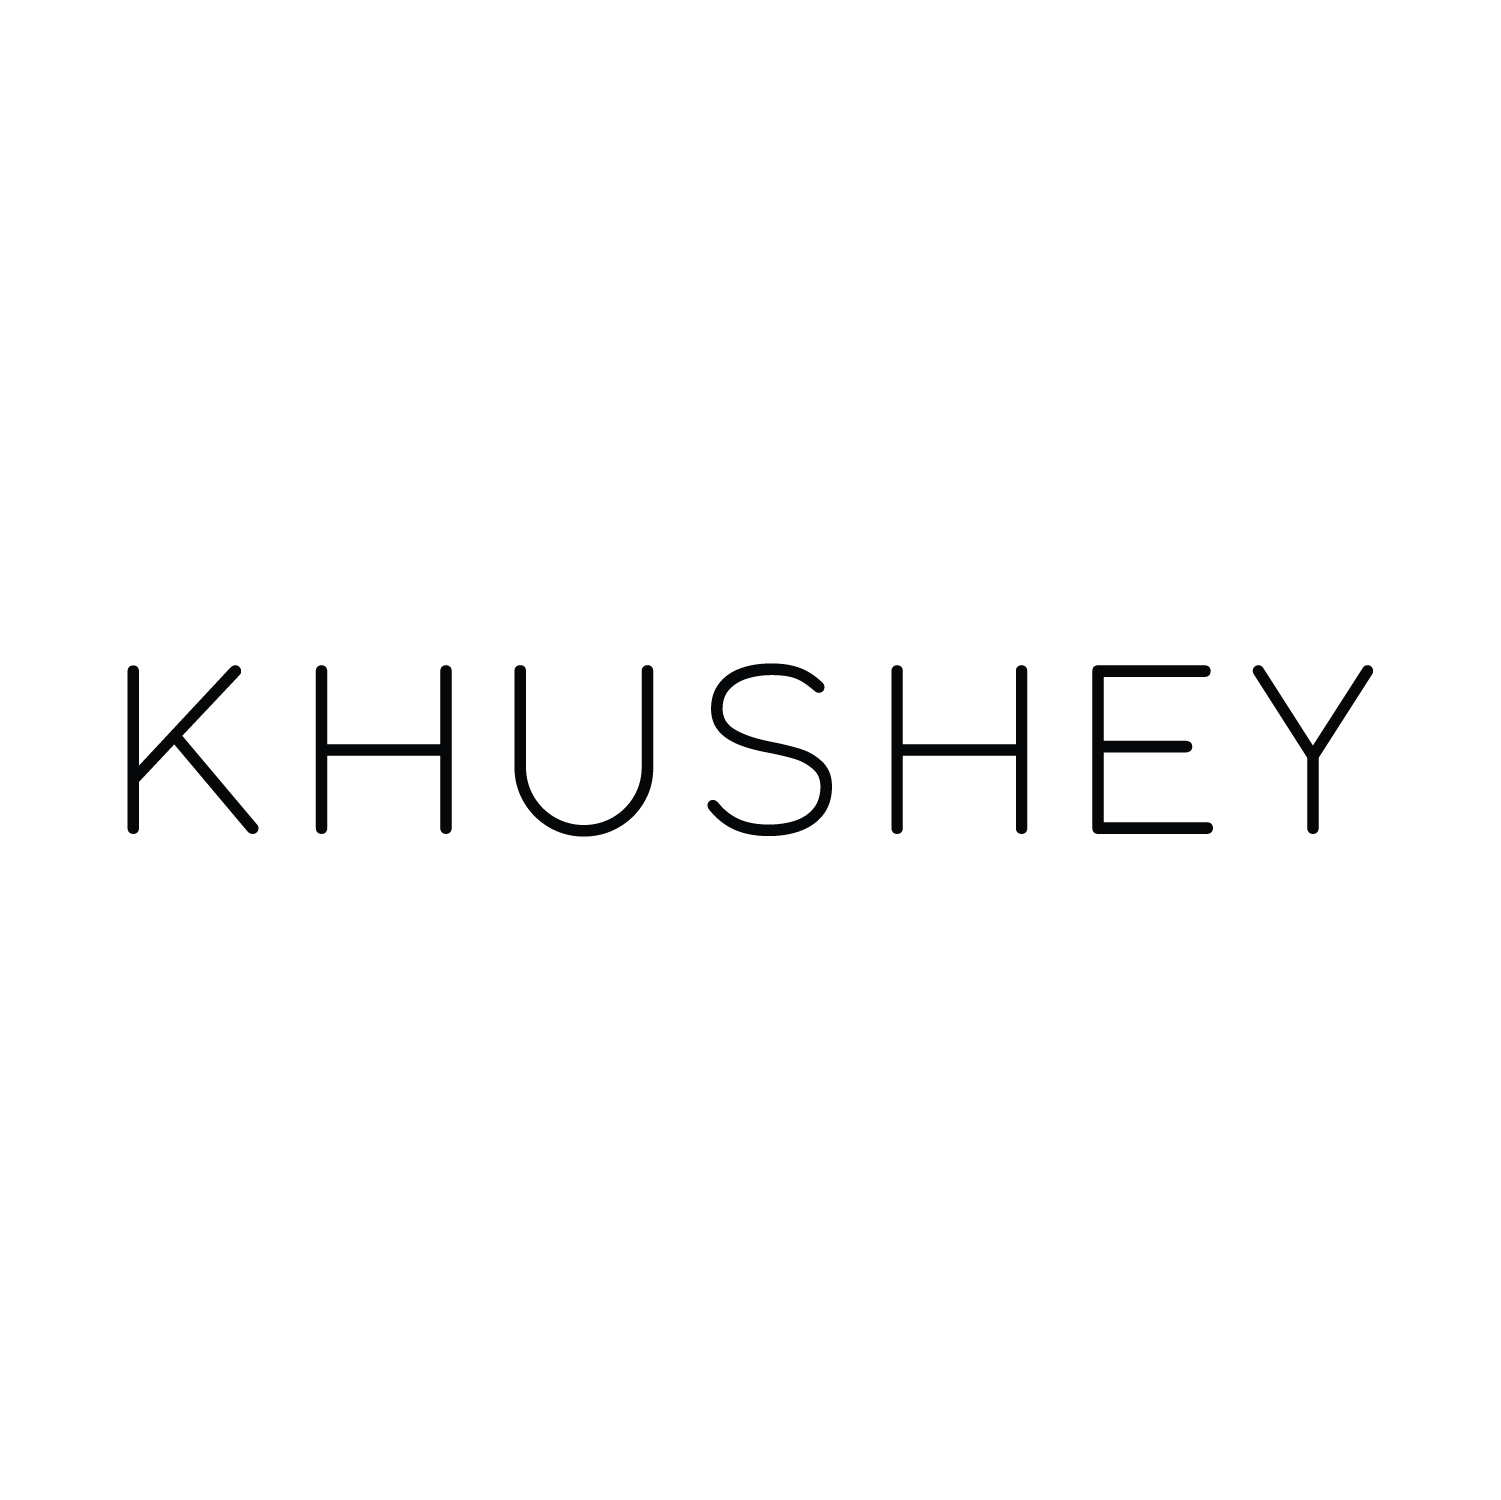 Khushey